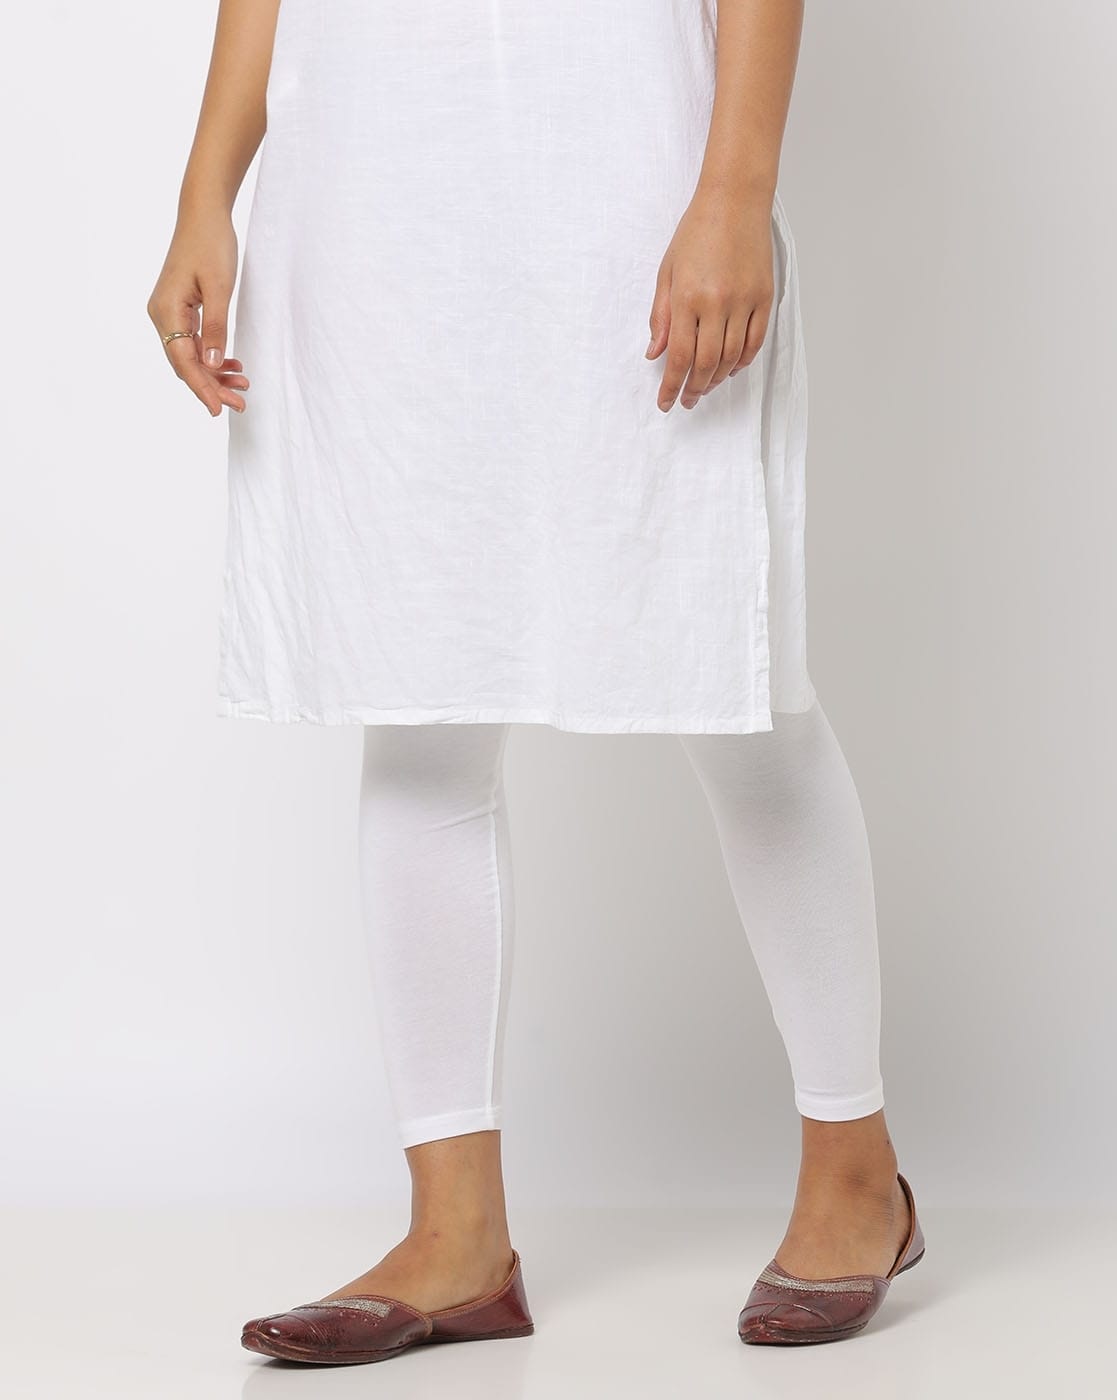 White Kurti Designs : आलिया भट्ट की तरह खूबसूरत और स्टाइलिश लुक पाना चाहते  है तो ये व्हाइट कुर्ती को ऐसे करें कैरी